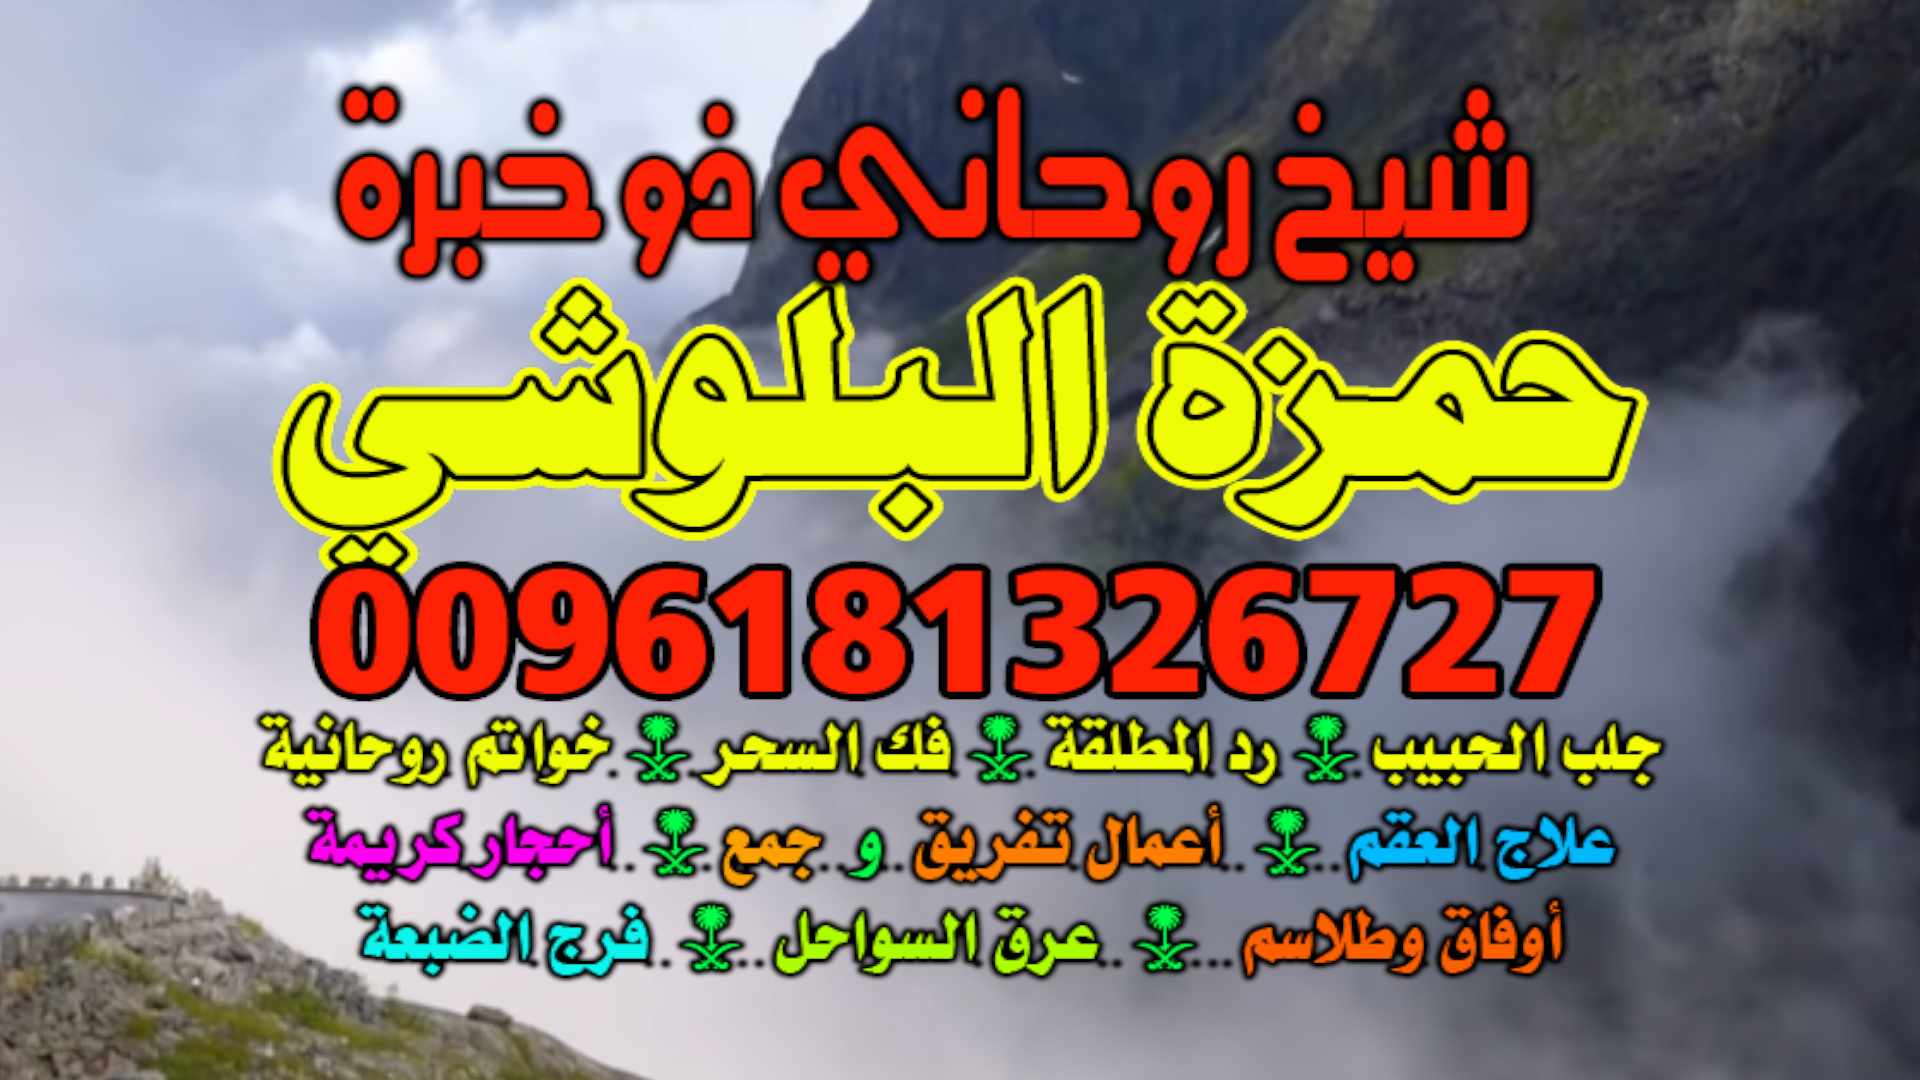 جلـب❤️ الحبيـب الرياض 0096181326727